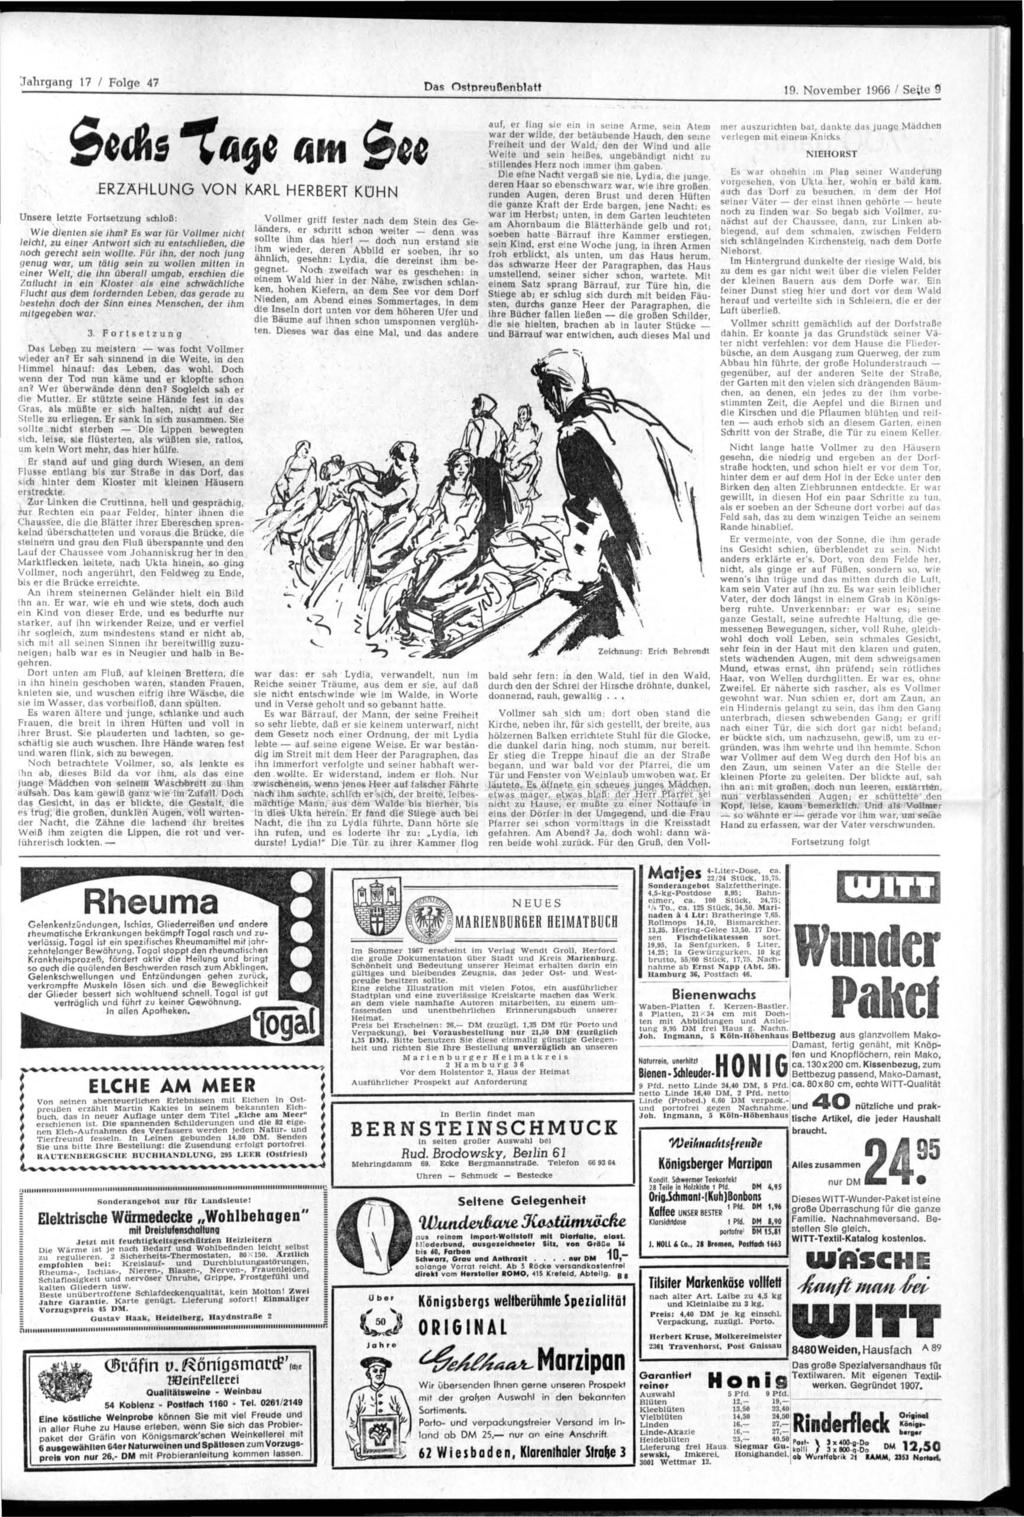 Das Ostpreußenblatt 19. November 1966 / Seite 9 etfis ^ a q e a m $w Unsere letzte Fortsetzung schloß: ERZÄHLUNG VON KARL HERBERT KÜHN Wie dienten sie ihm?